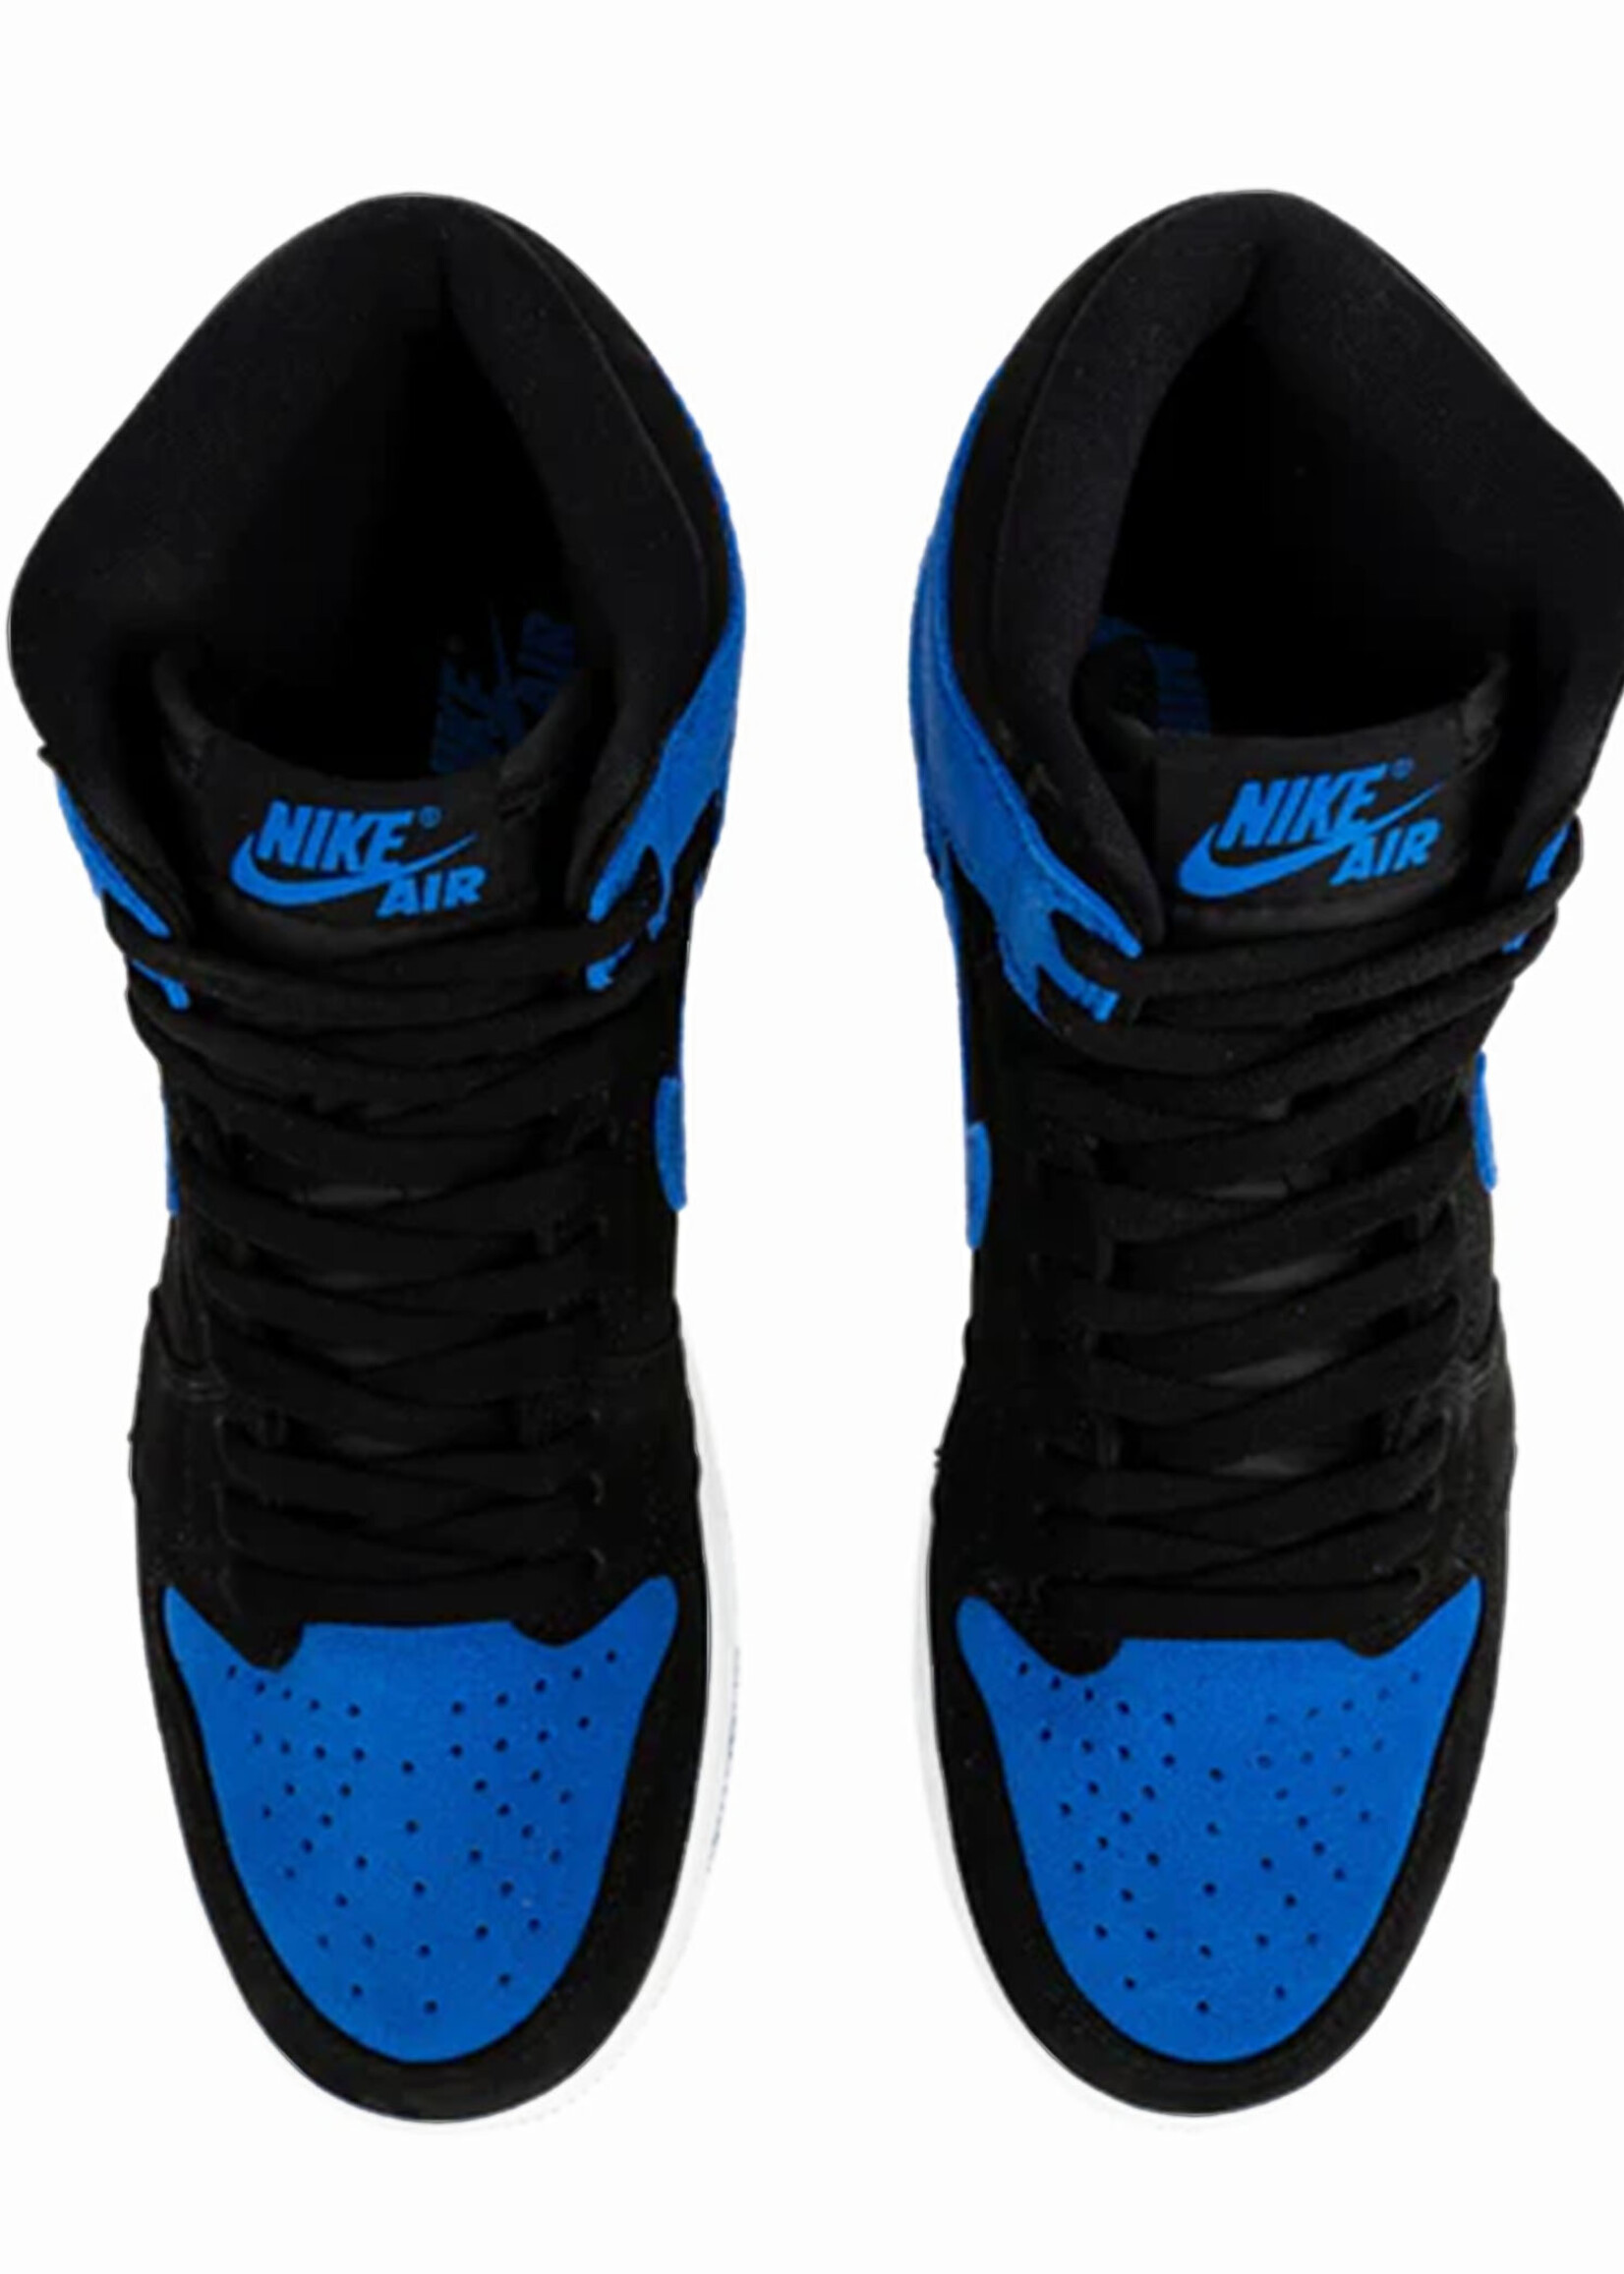 Nike Air Jordan 1 High Royal Suede